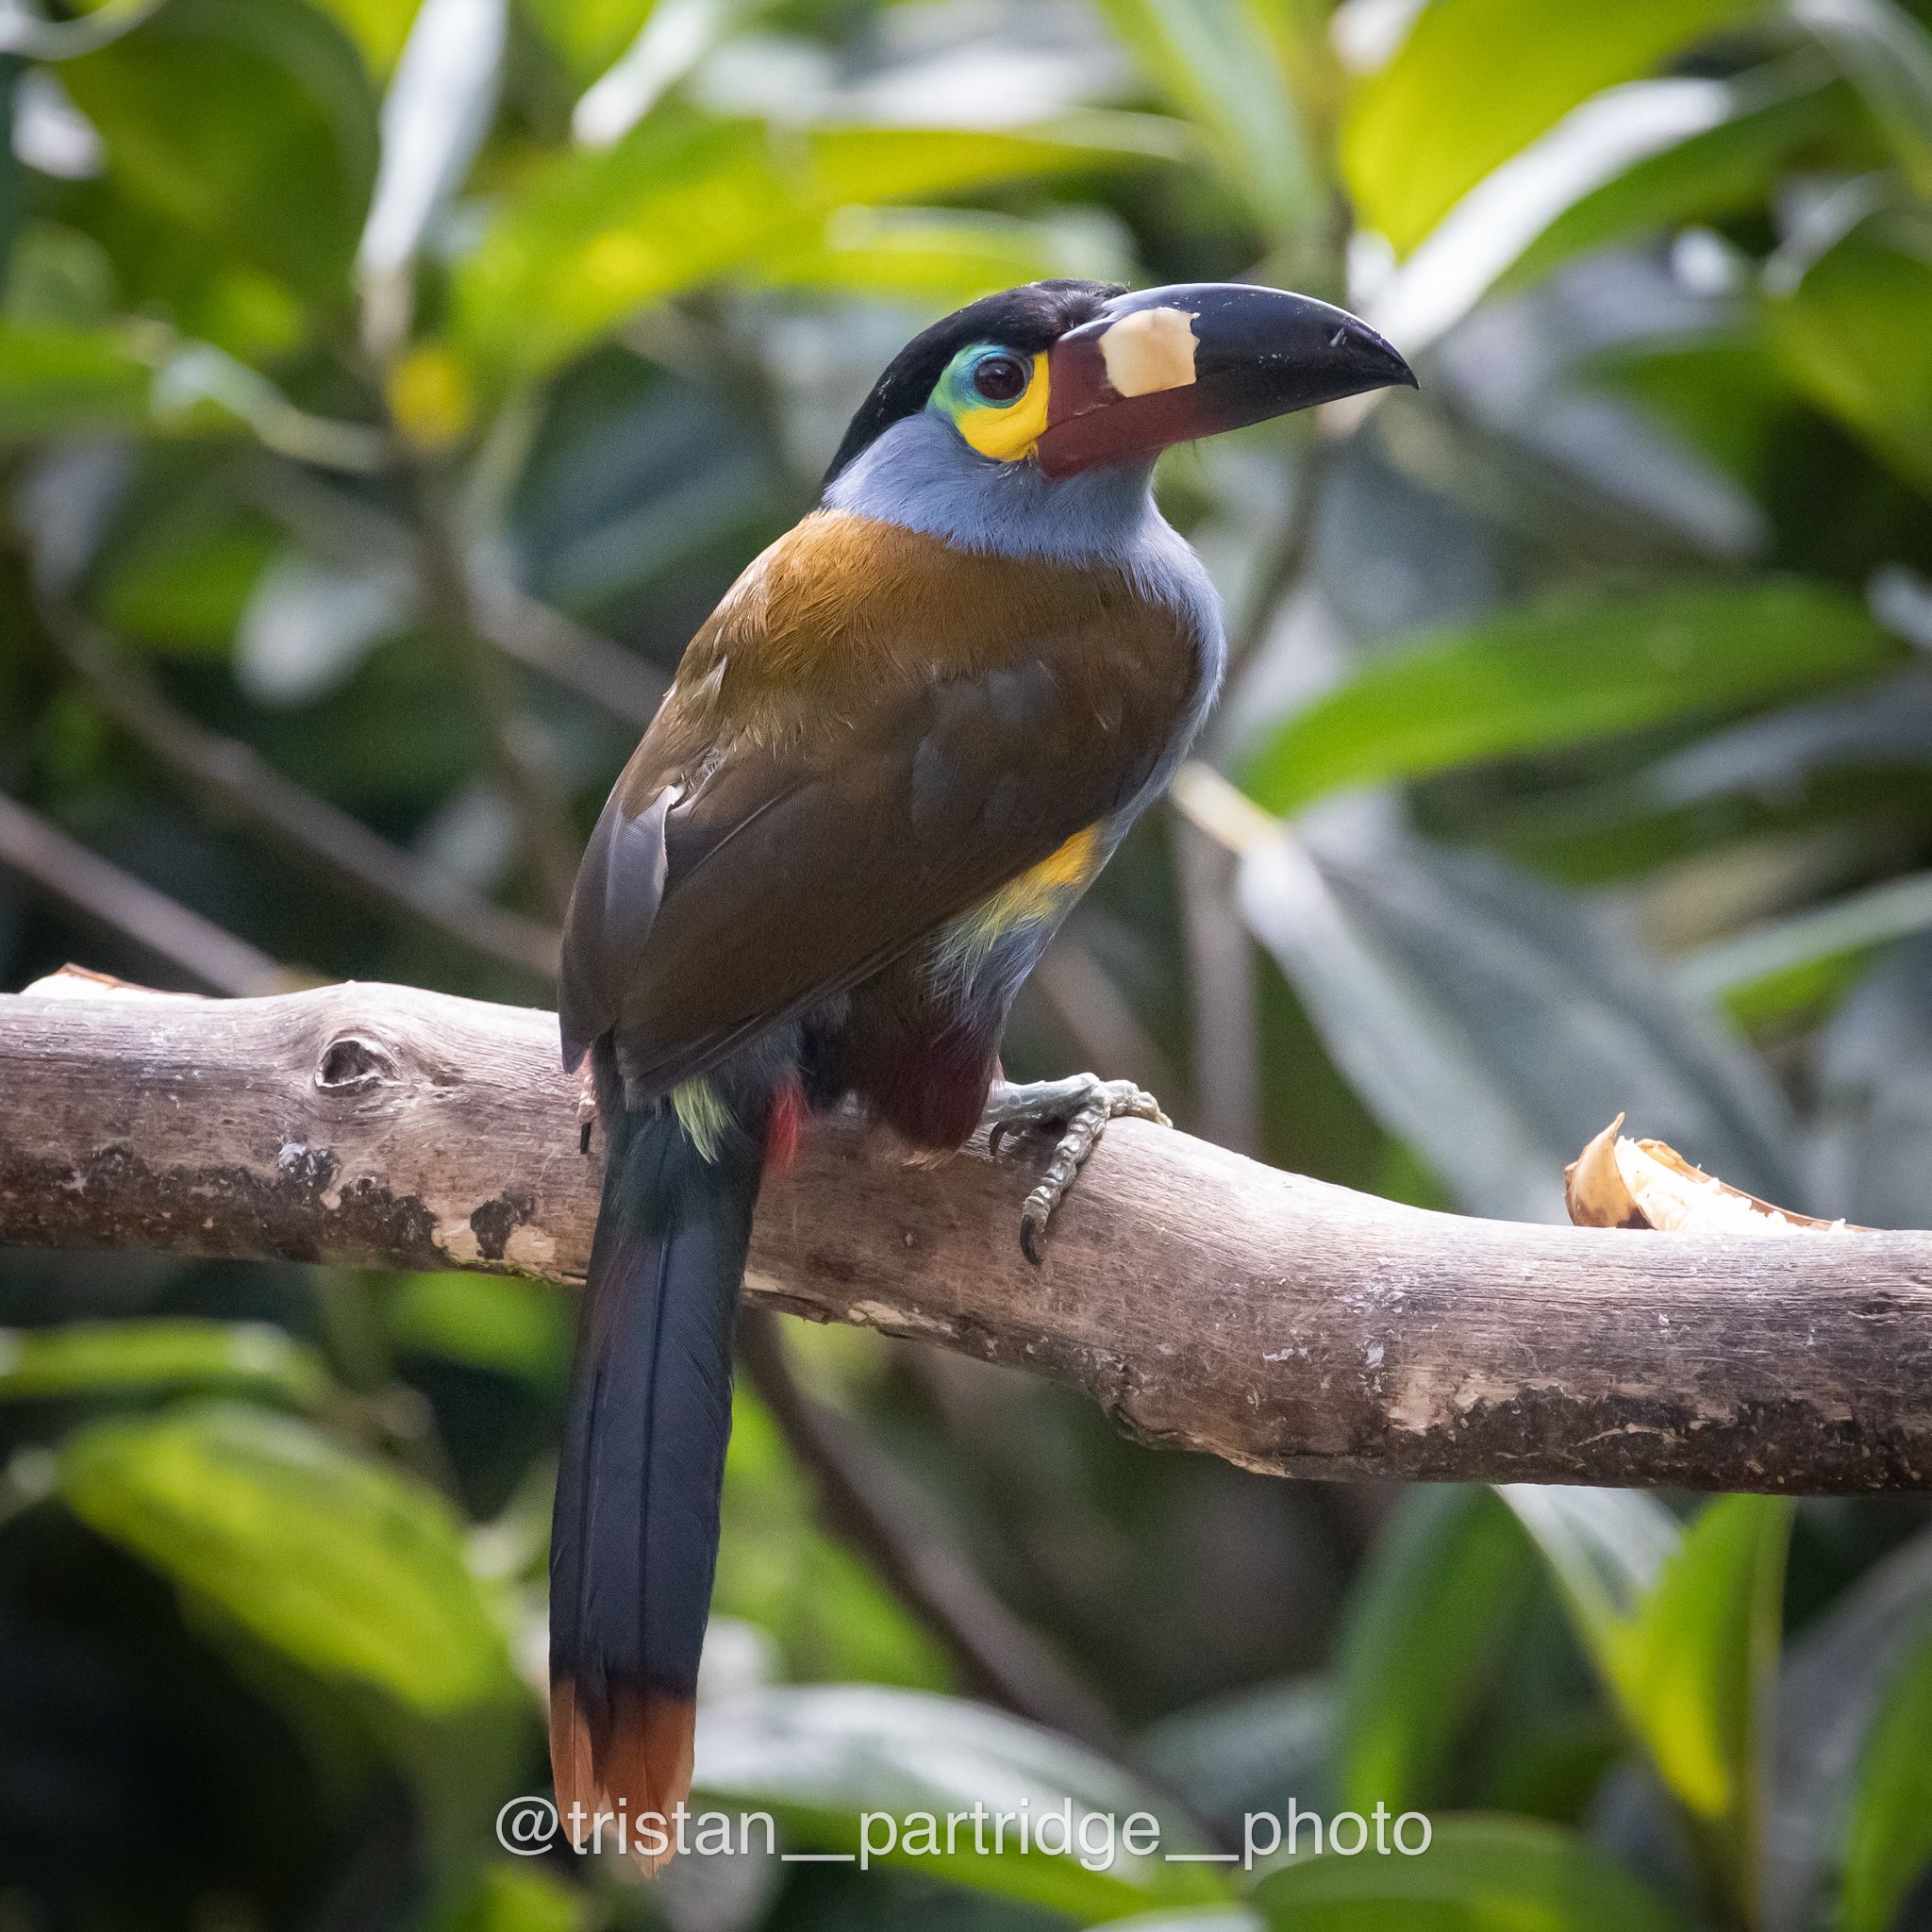 ecuador bird photography tours